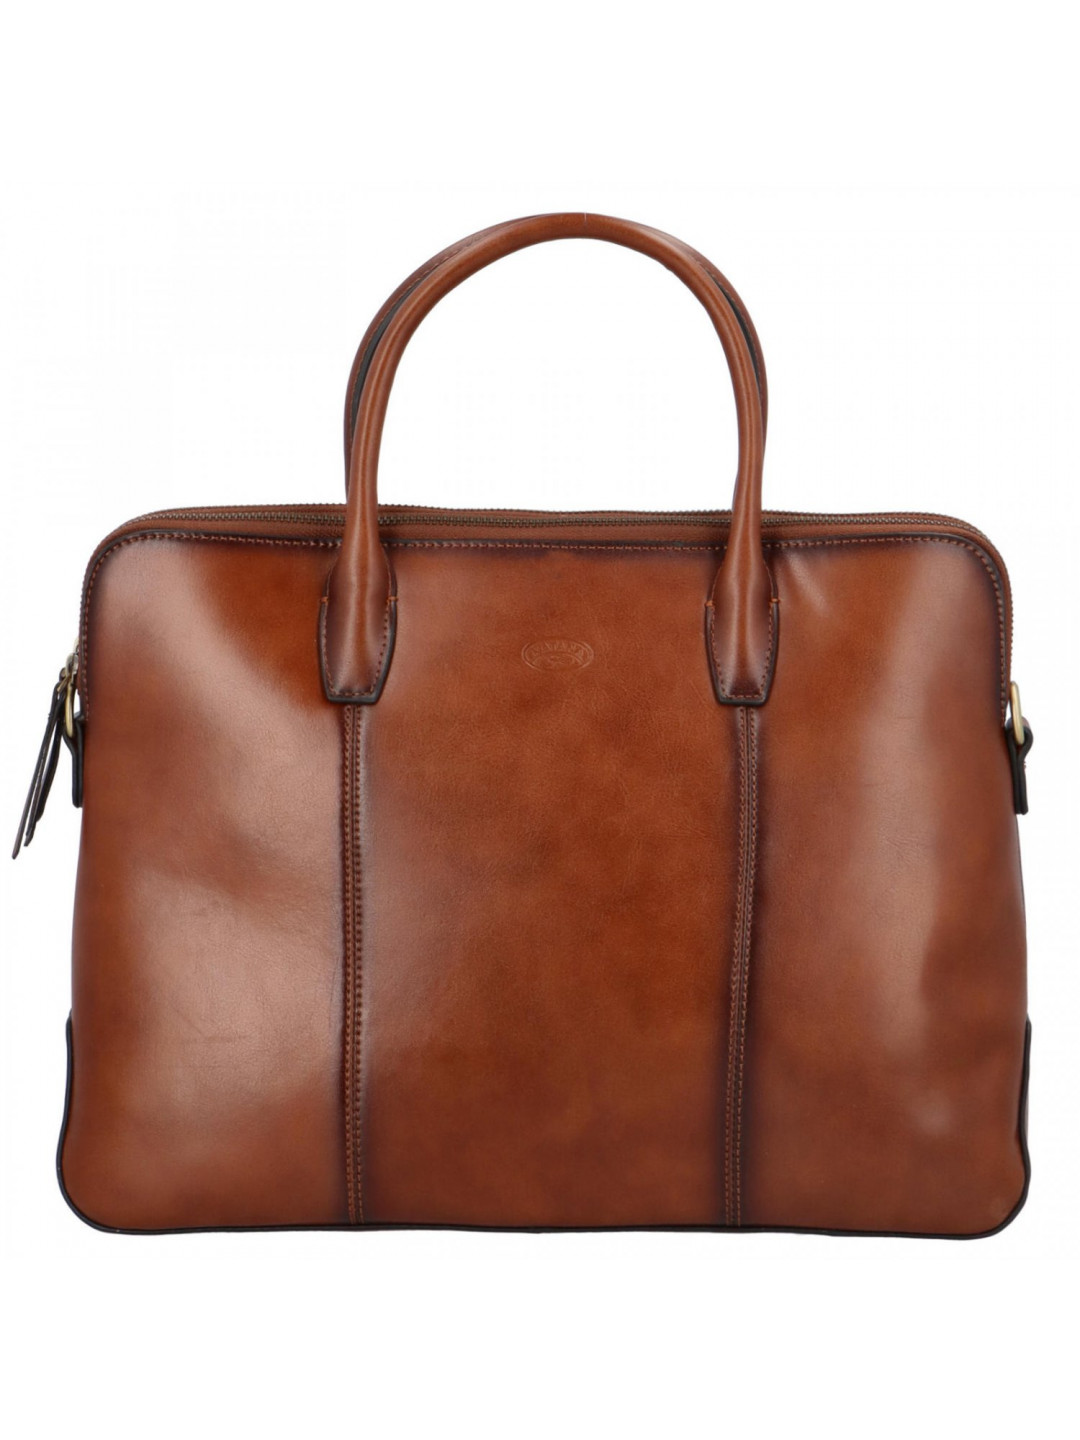 Luxusní kožená dámská business kabelka hnědá – Katana Floppy